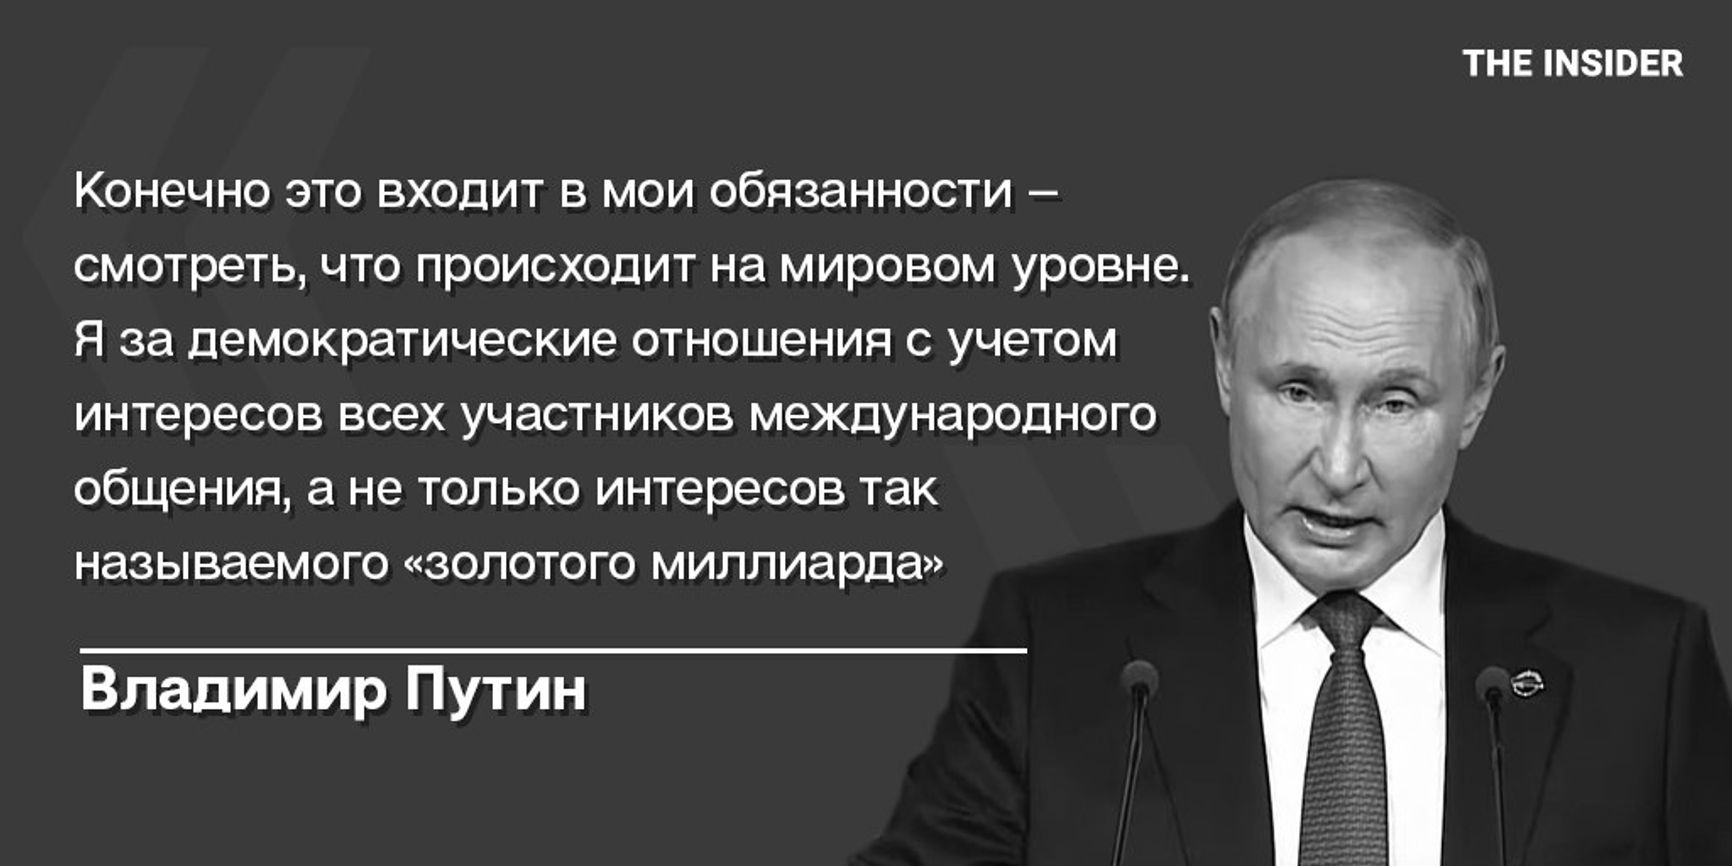 «Конечно, я ассоциирую себя с низами». Путин рассказал о своем происхождении, «золотом миллиарде» и ядерном оружии